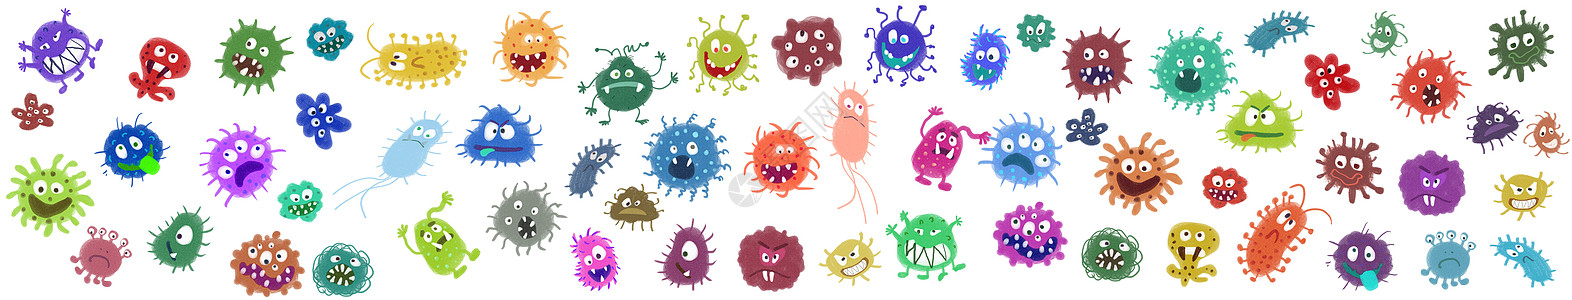 癌细胞细菌病毒元素插画